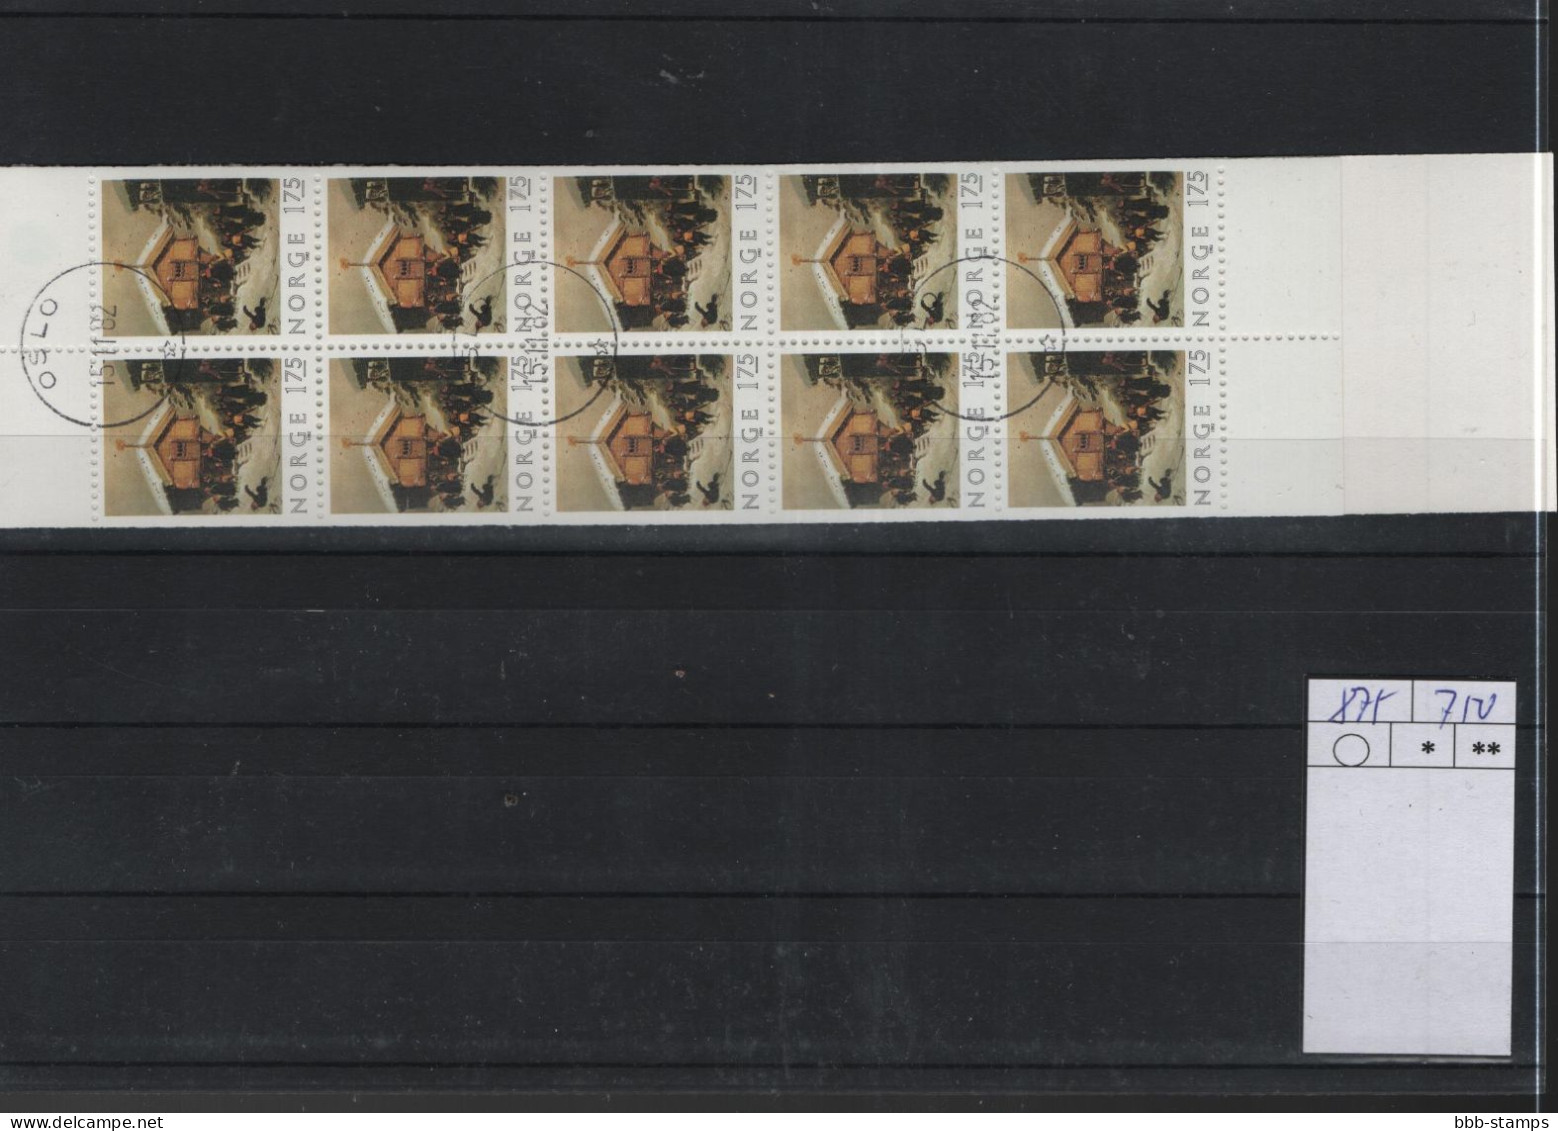 Norwegen Michel Cat.No. Booklet Used 875  - Postzegelboekjes